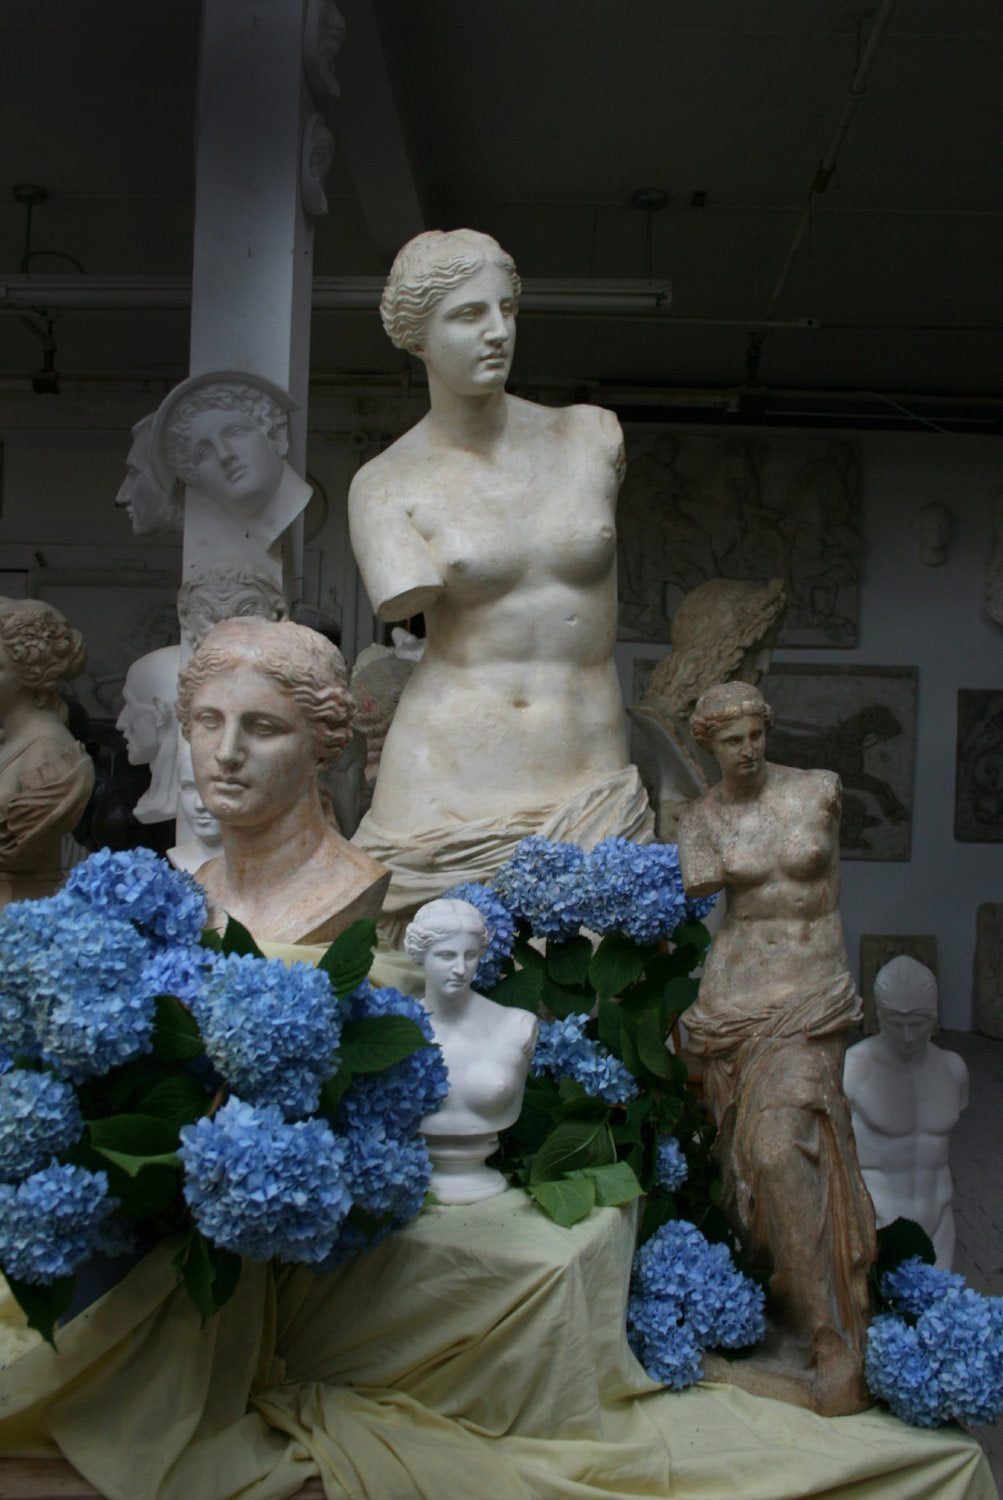 Venus de melo sculpture for sale item caproni collection